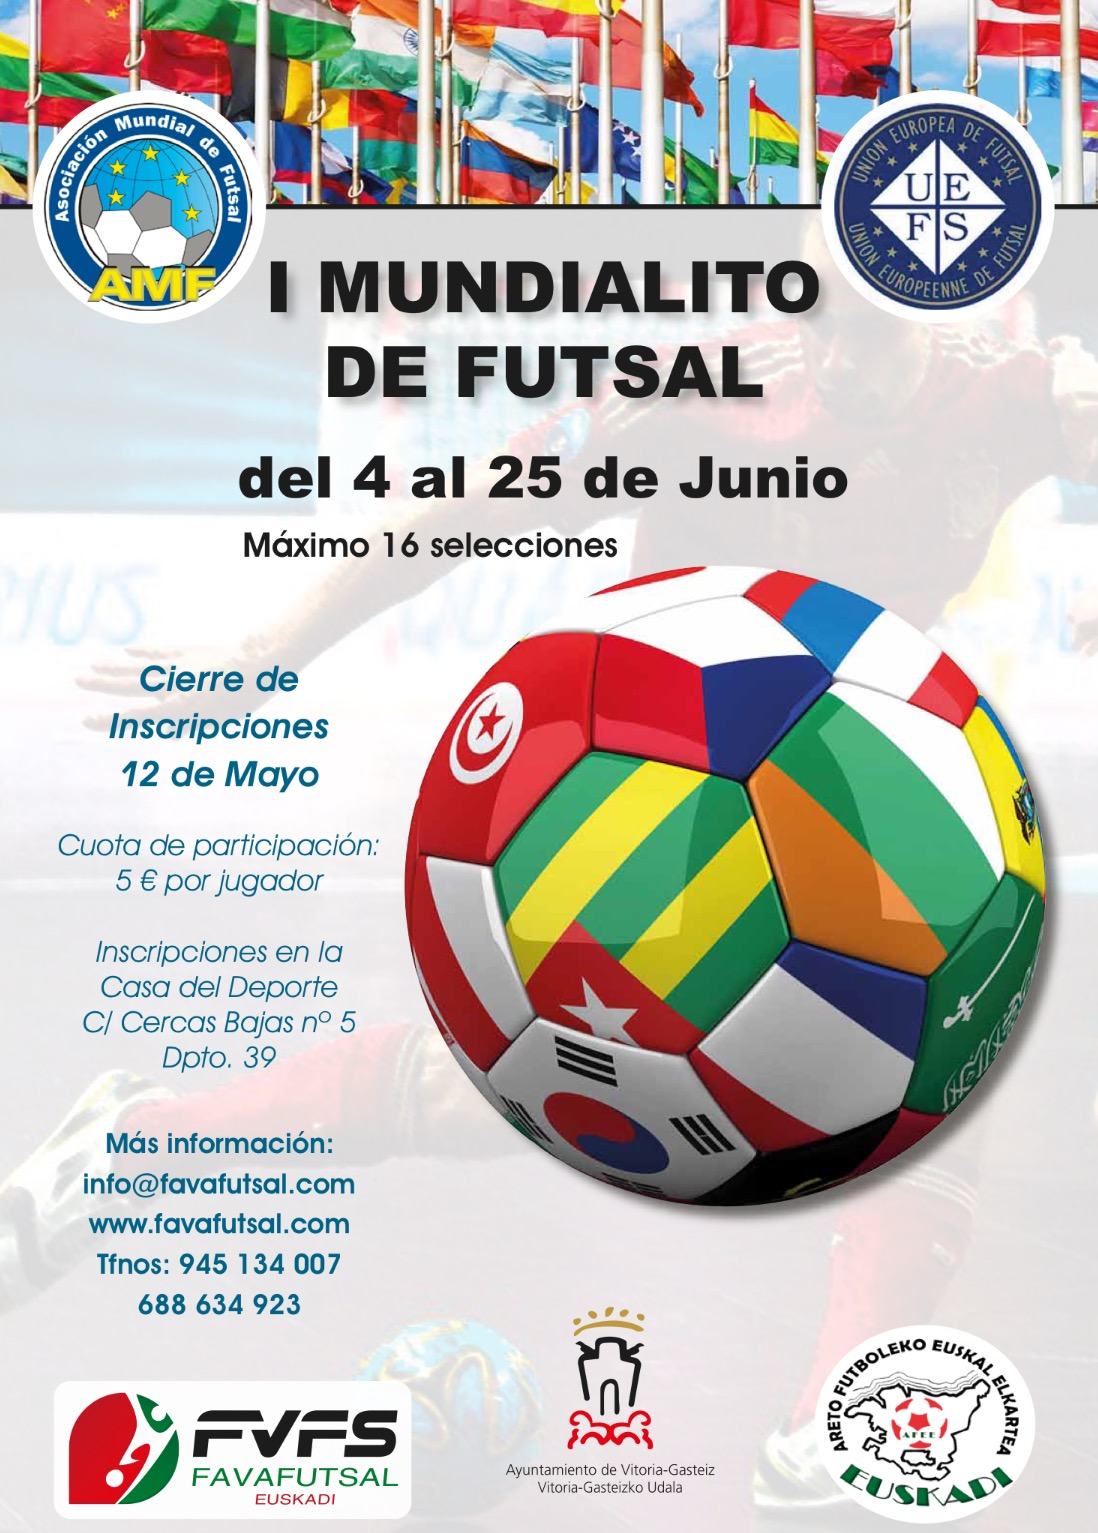 El sábado 4 a las 17:00 horas en Judimendi, apertura del Mundialito de selecciones de Futsal.